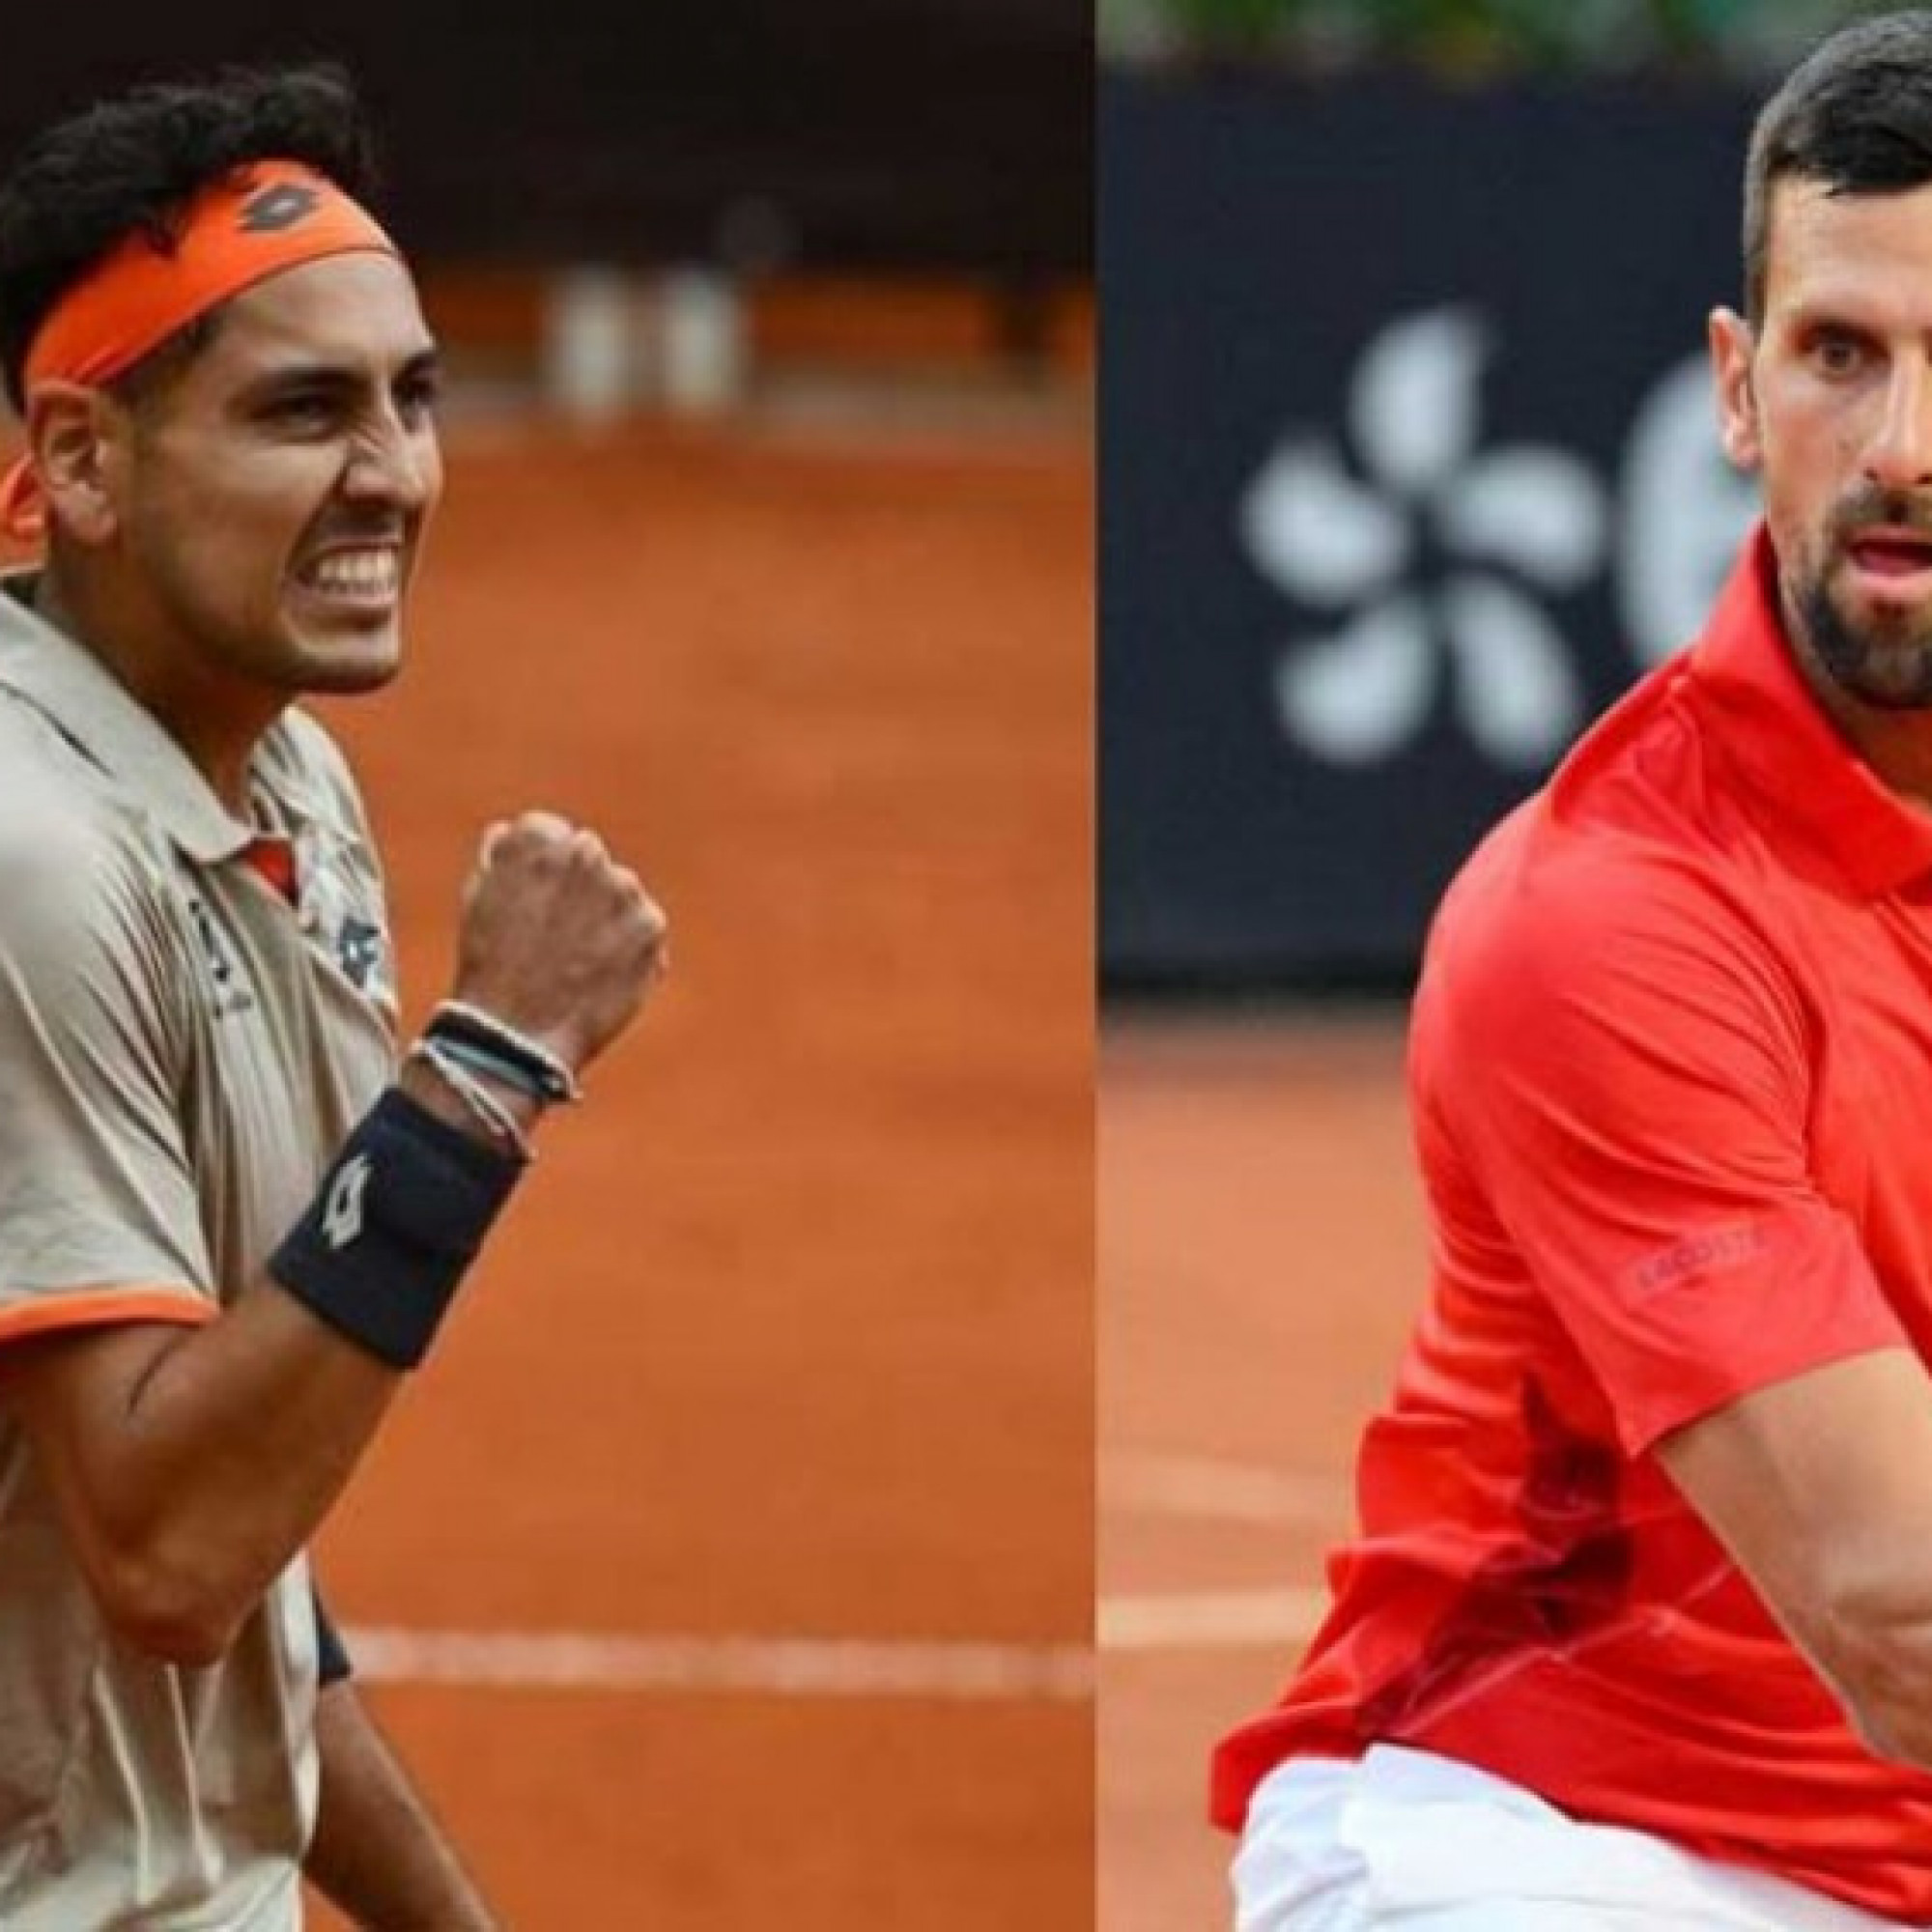  - Trực tiếp tennis Djokovic - Tabilo: Trận đấu hoãn thêm 30 phút (Rome Open)